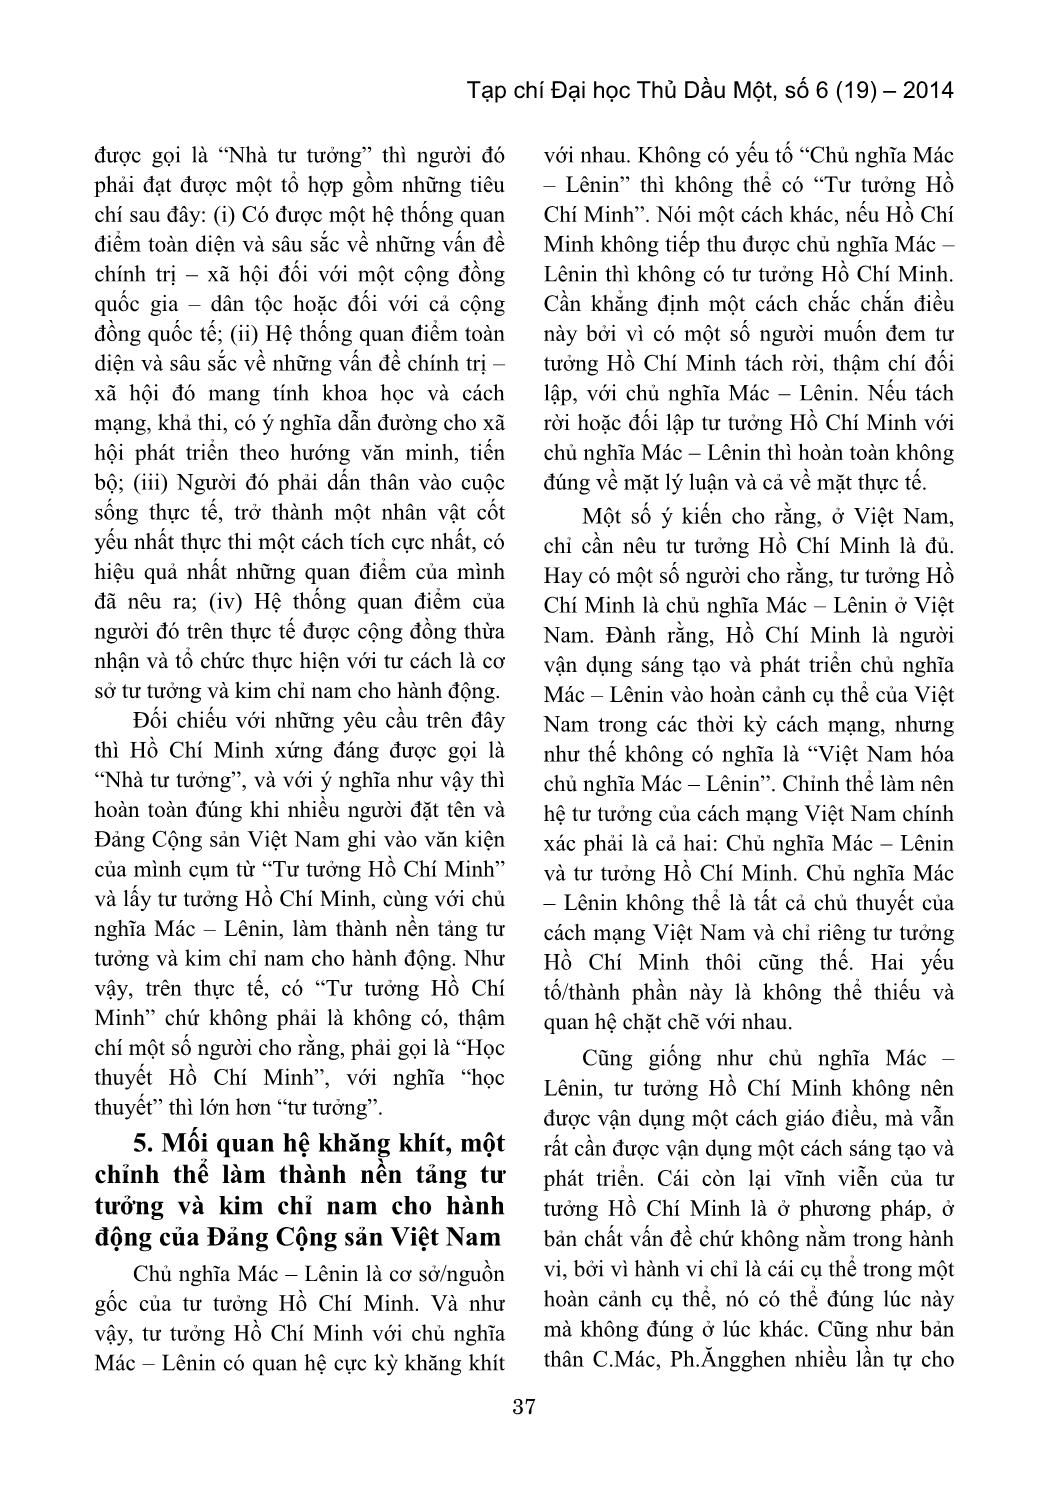 Thêm một số nhận thức về Hồ Chí Minh trang 5